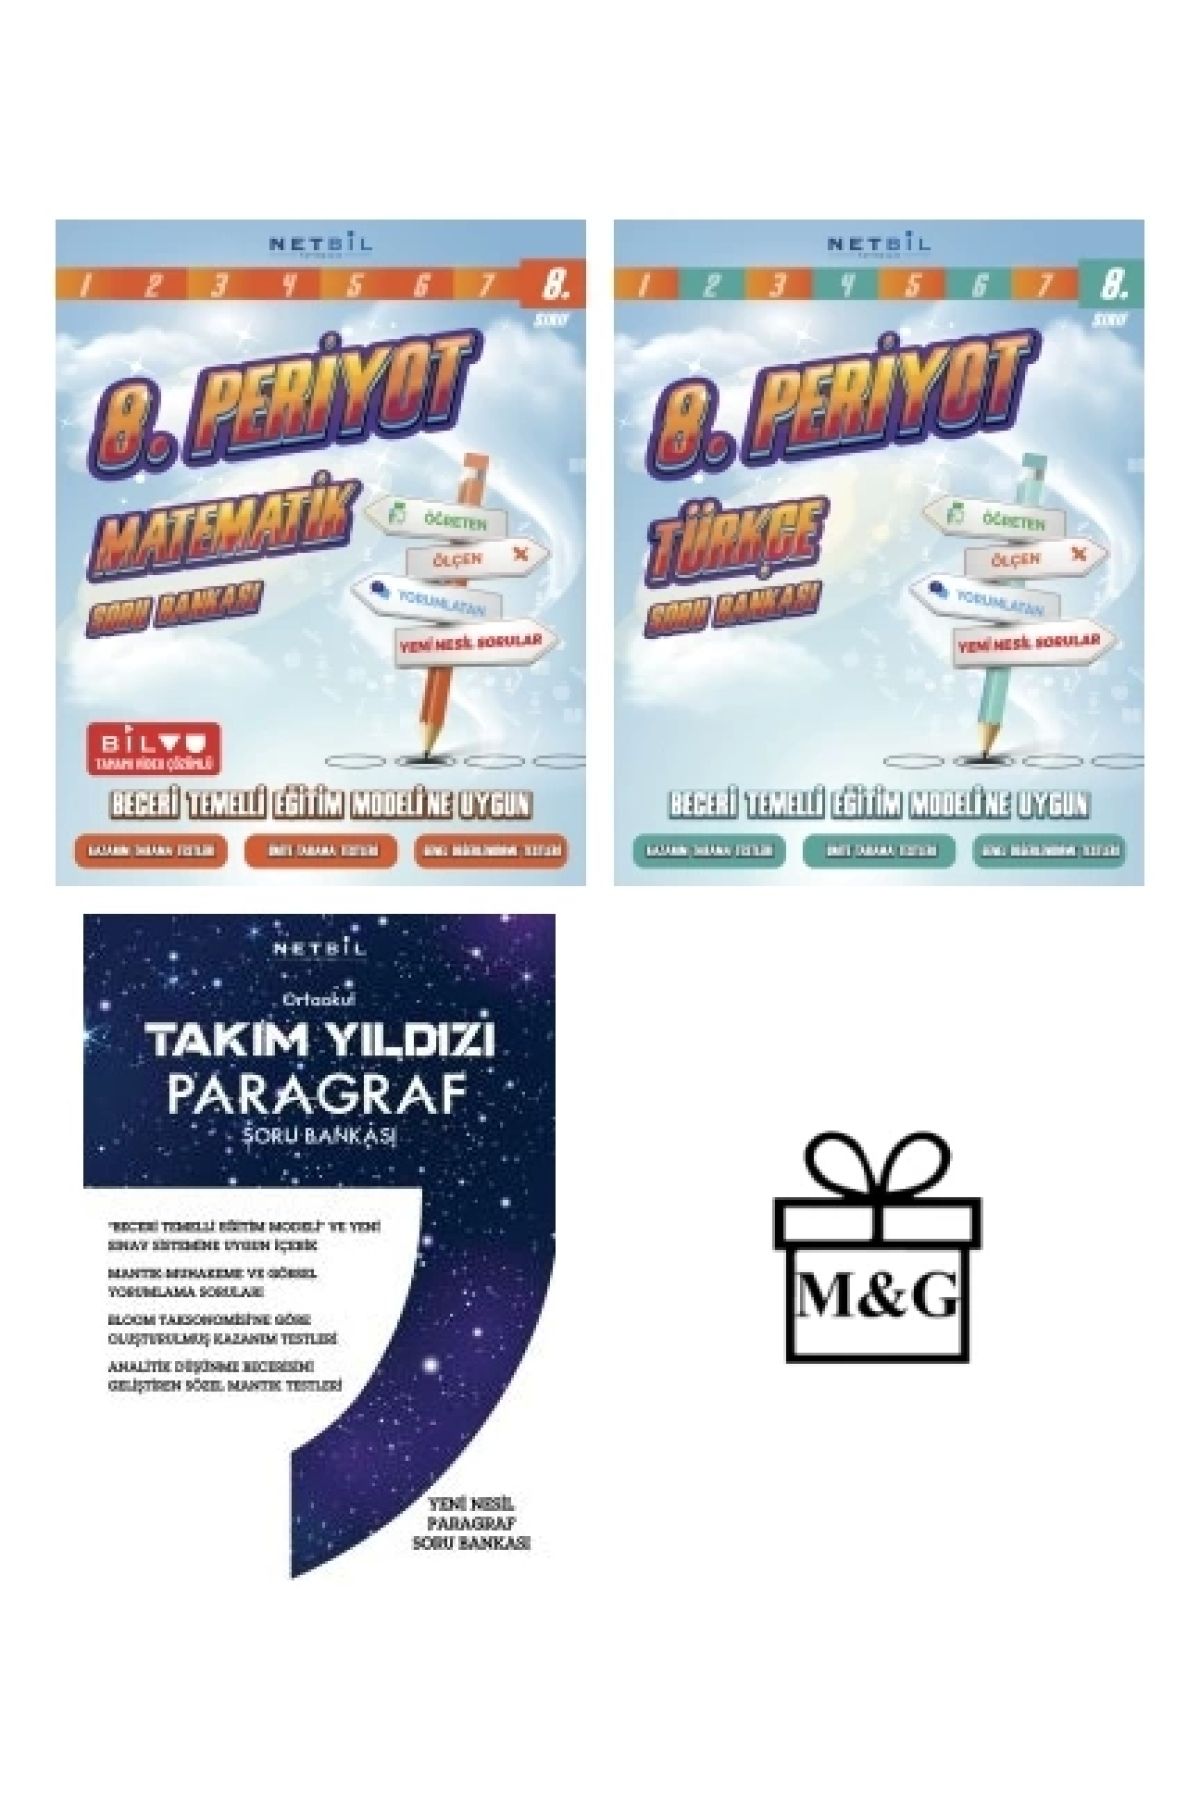 Netbil Yayınları 8. Sınıf Periyot Matematik Türkçe Ve Takım Yıldızı Paragraf Soru Bankası